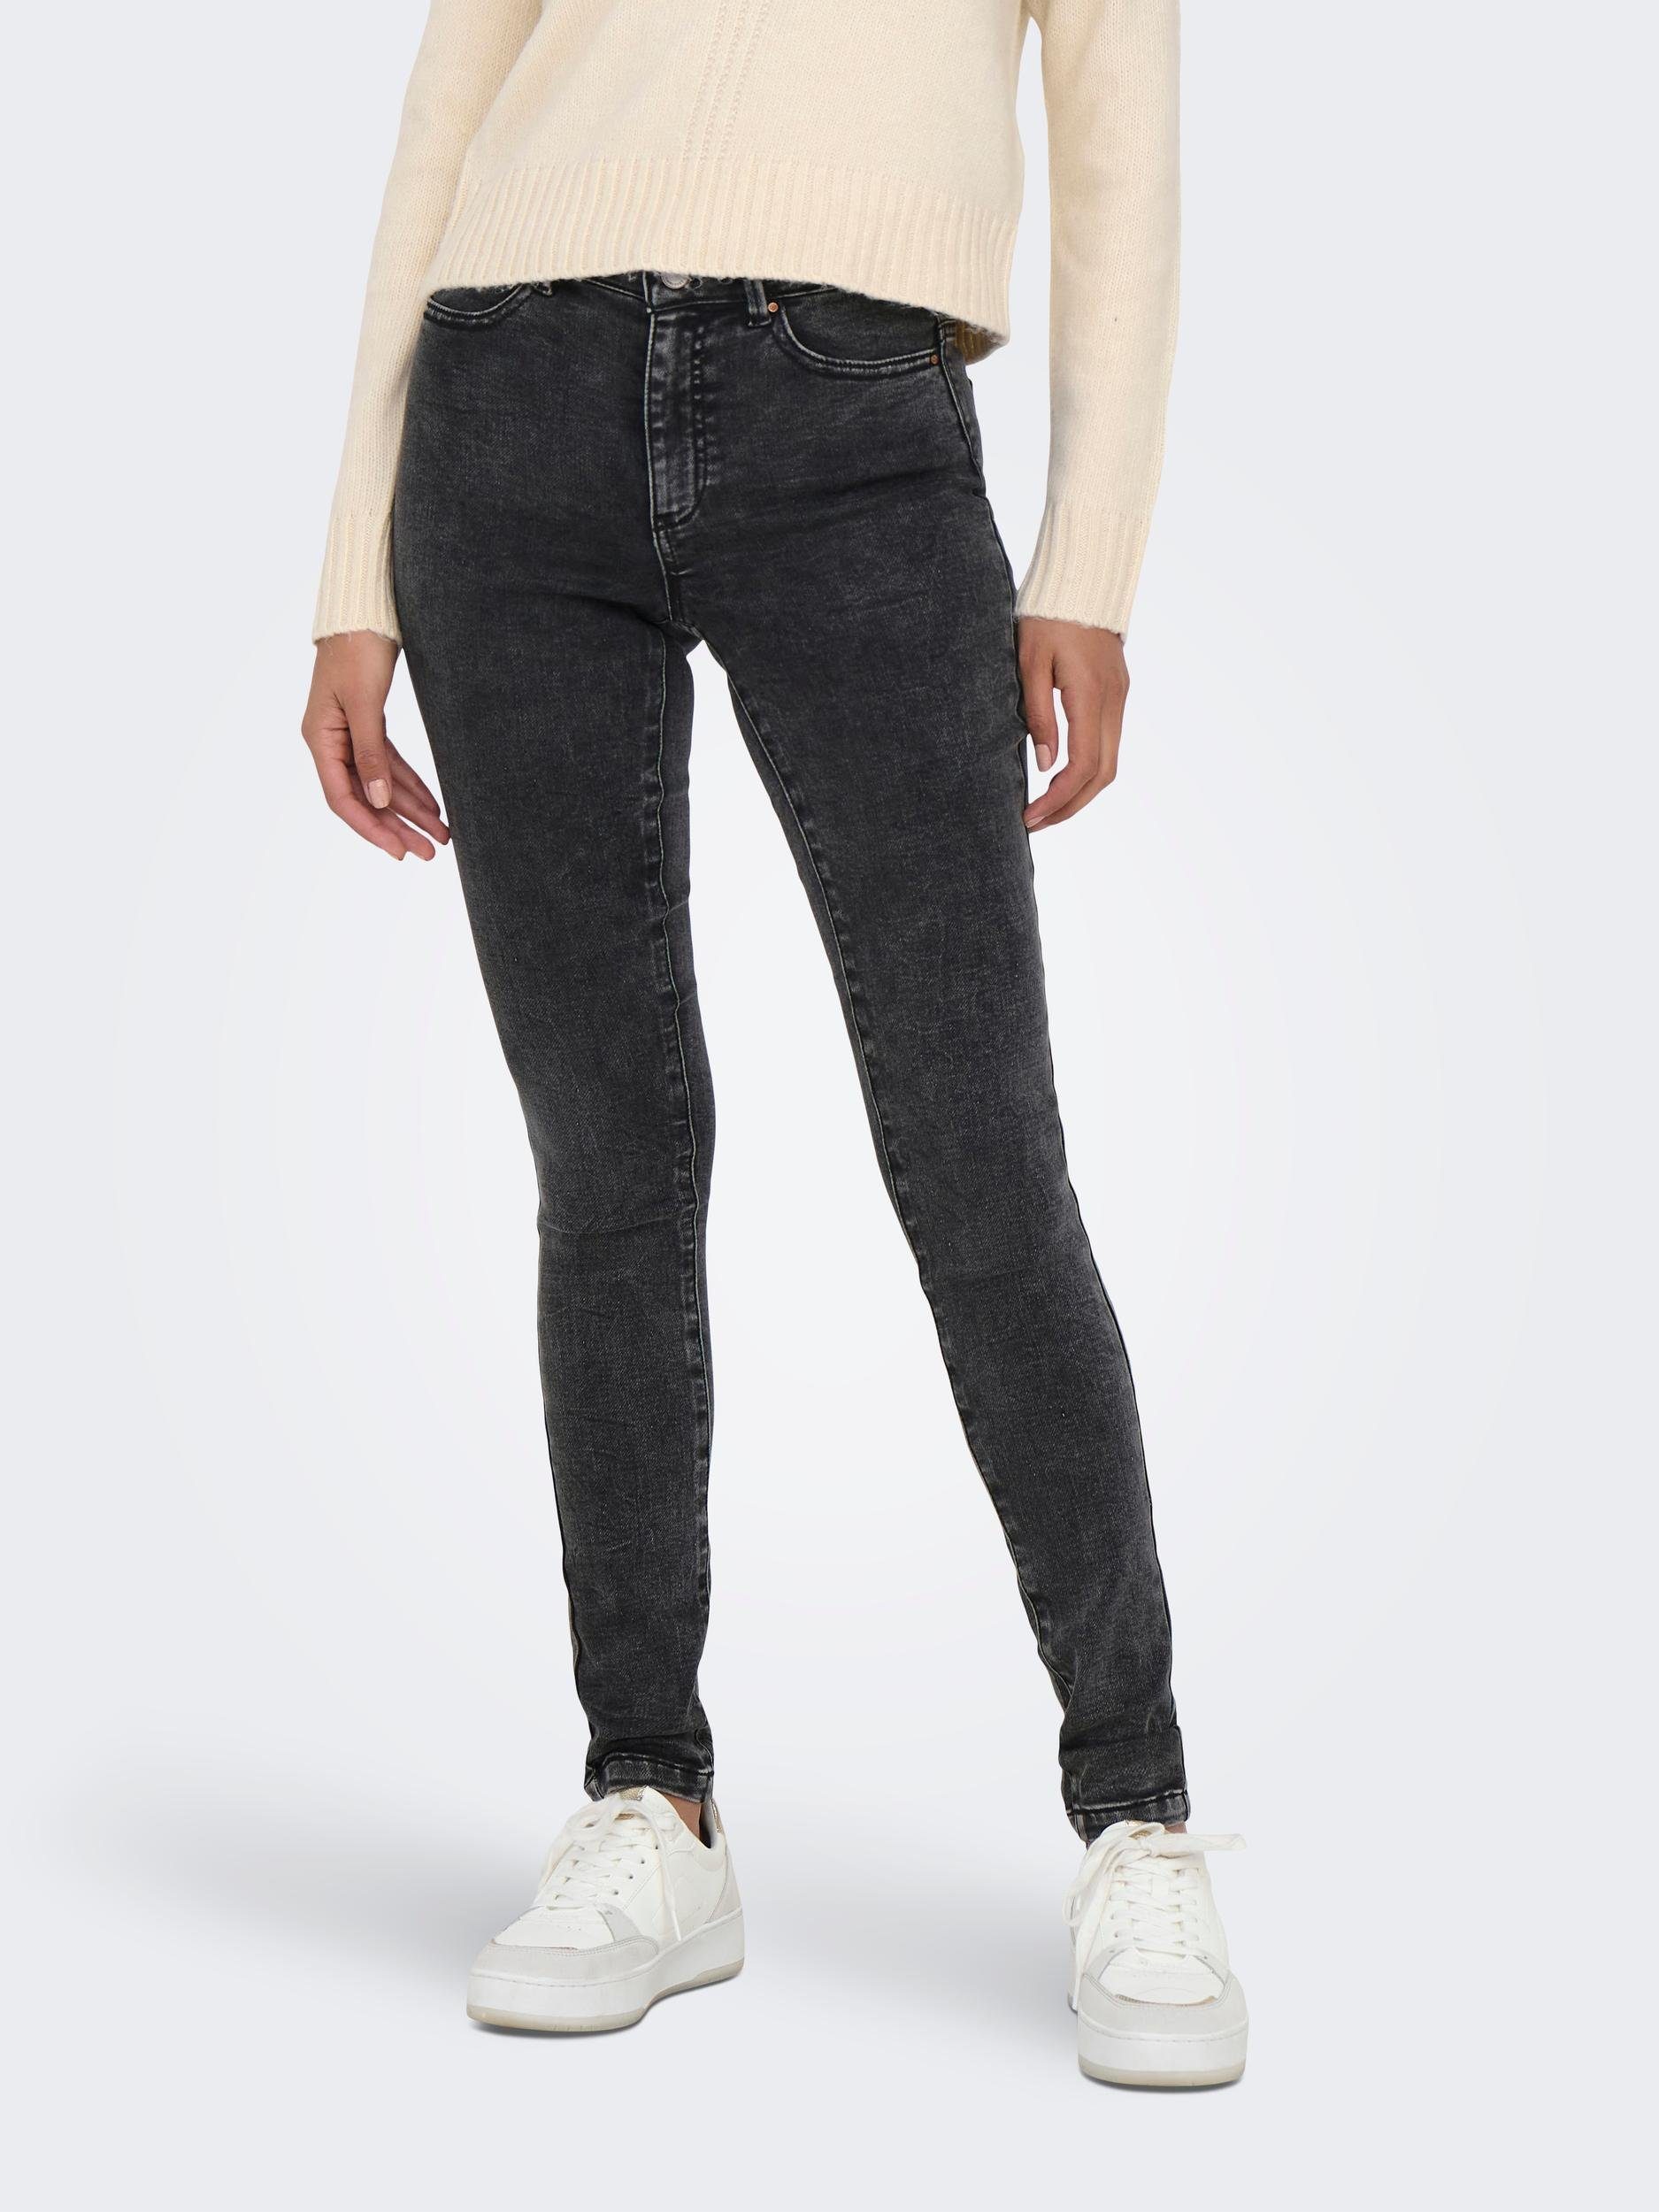 ONLY 5-Pocket-Jeans ONLFOREVER HIGH SKINNY Washed JOGG Black HW DNM